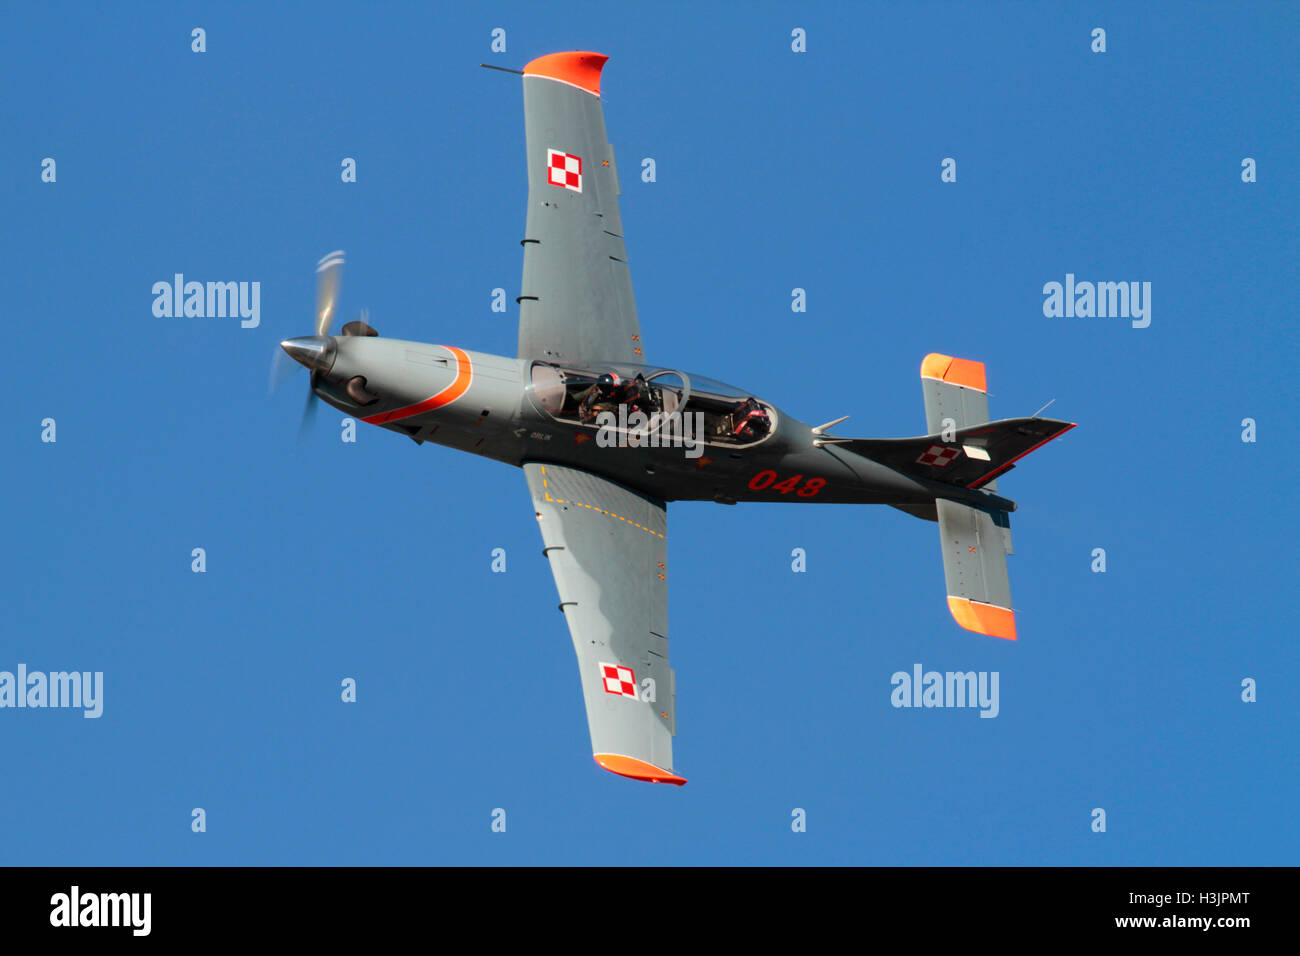 Militärflugzeug. Polnische Luftwaffe PZL-130 Orlik Einmotorpropeller angetrieben Trainer Flugzeug fliegen in einem blauen Himmel auf einem Luftdisplay Stockfoto